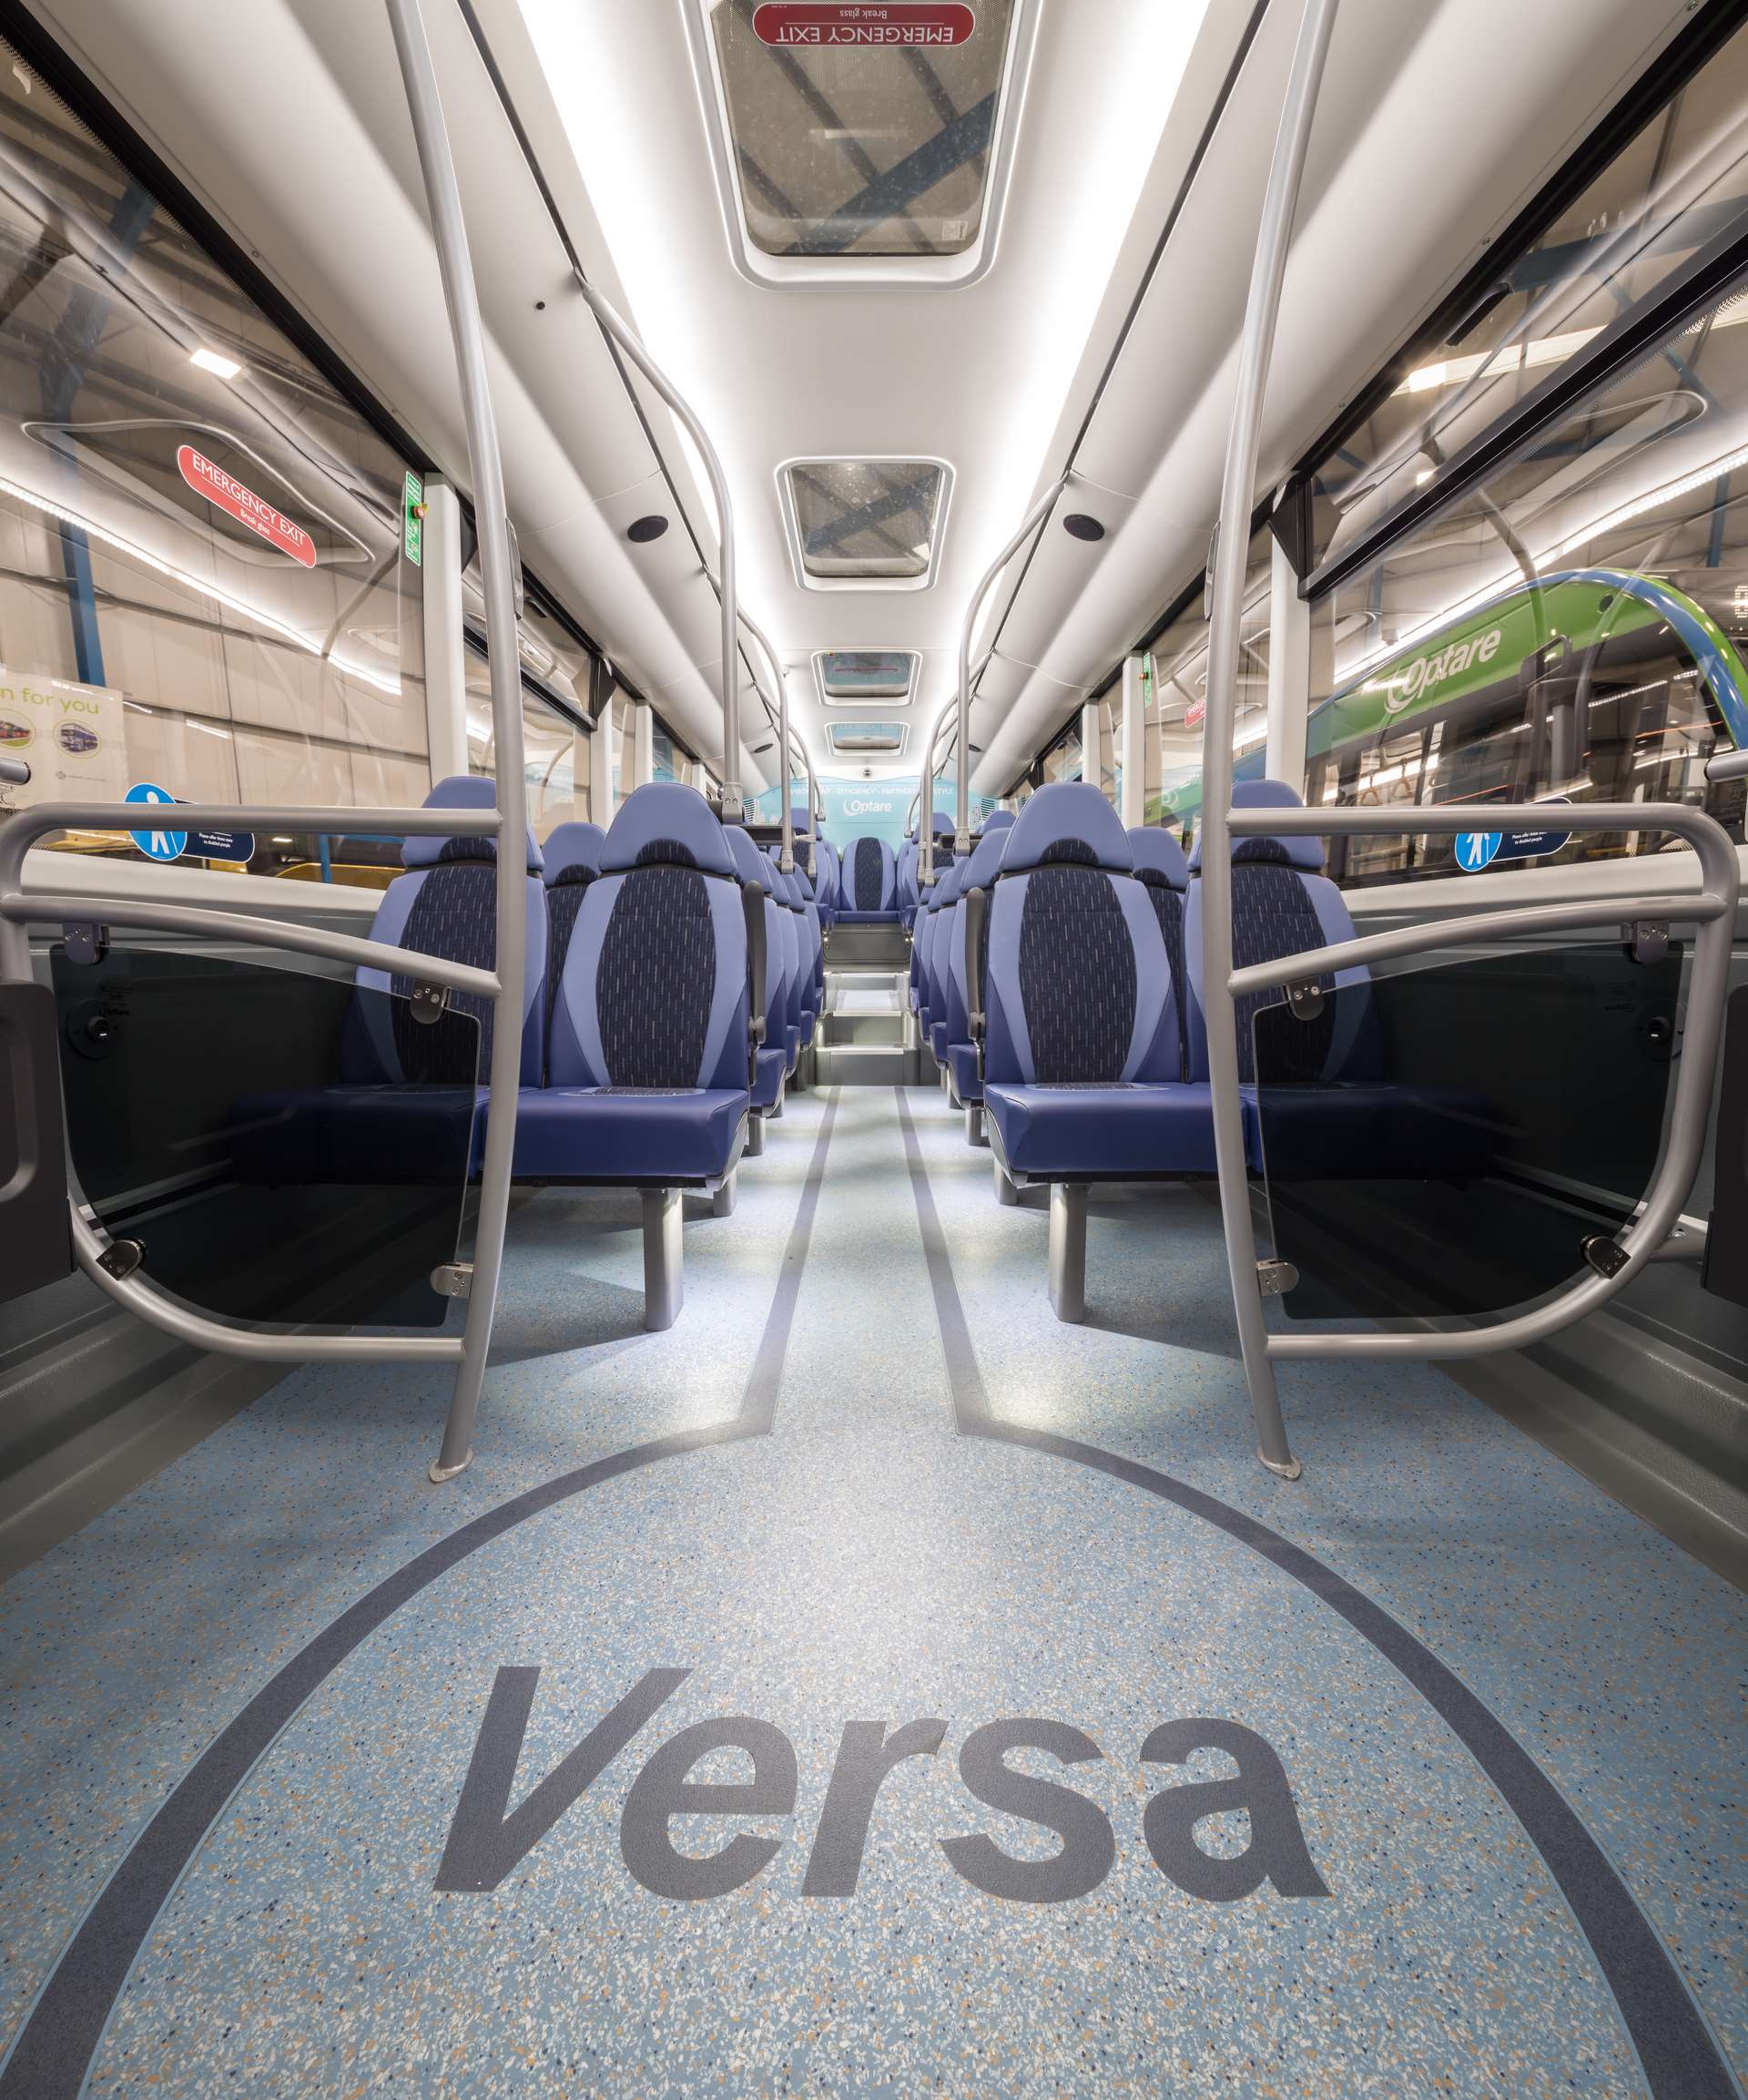 Optare Versa and Solo - bus interior